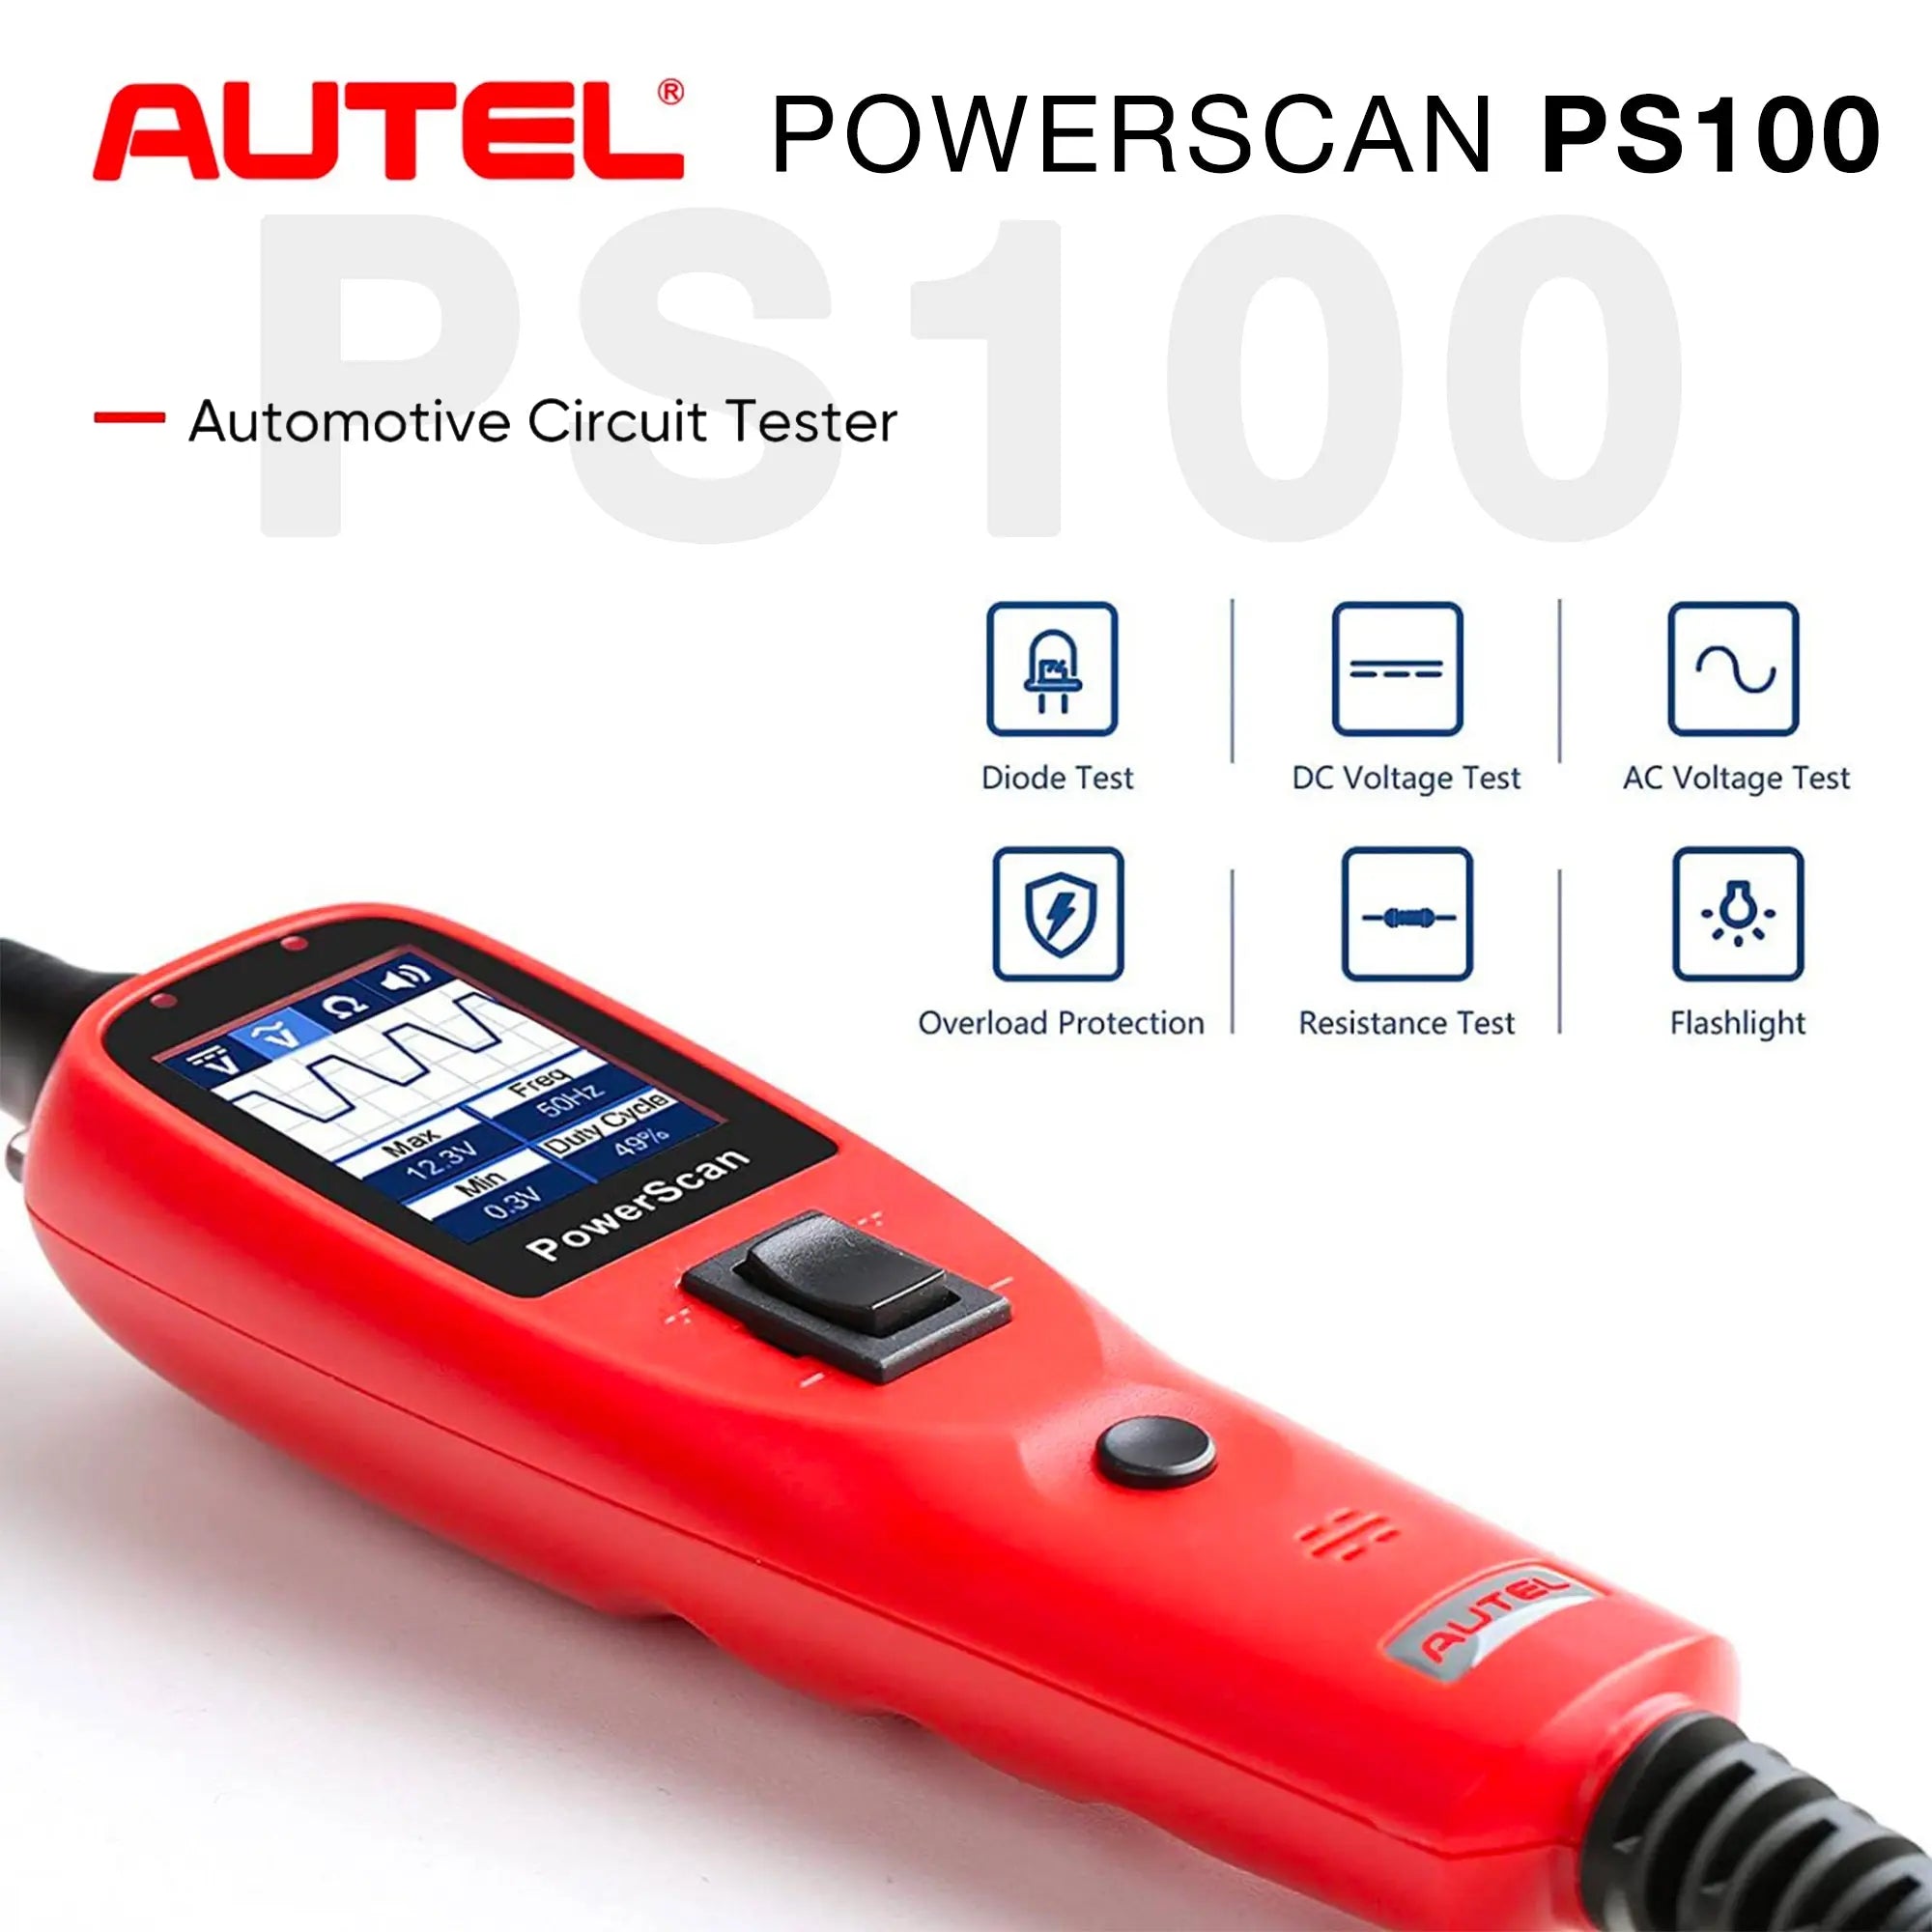 Autel PowerScan PS100 Power Circuit Probe Kit - Automotive Circuit